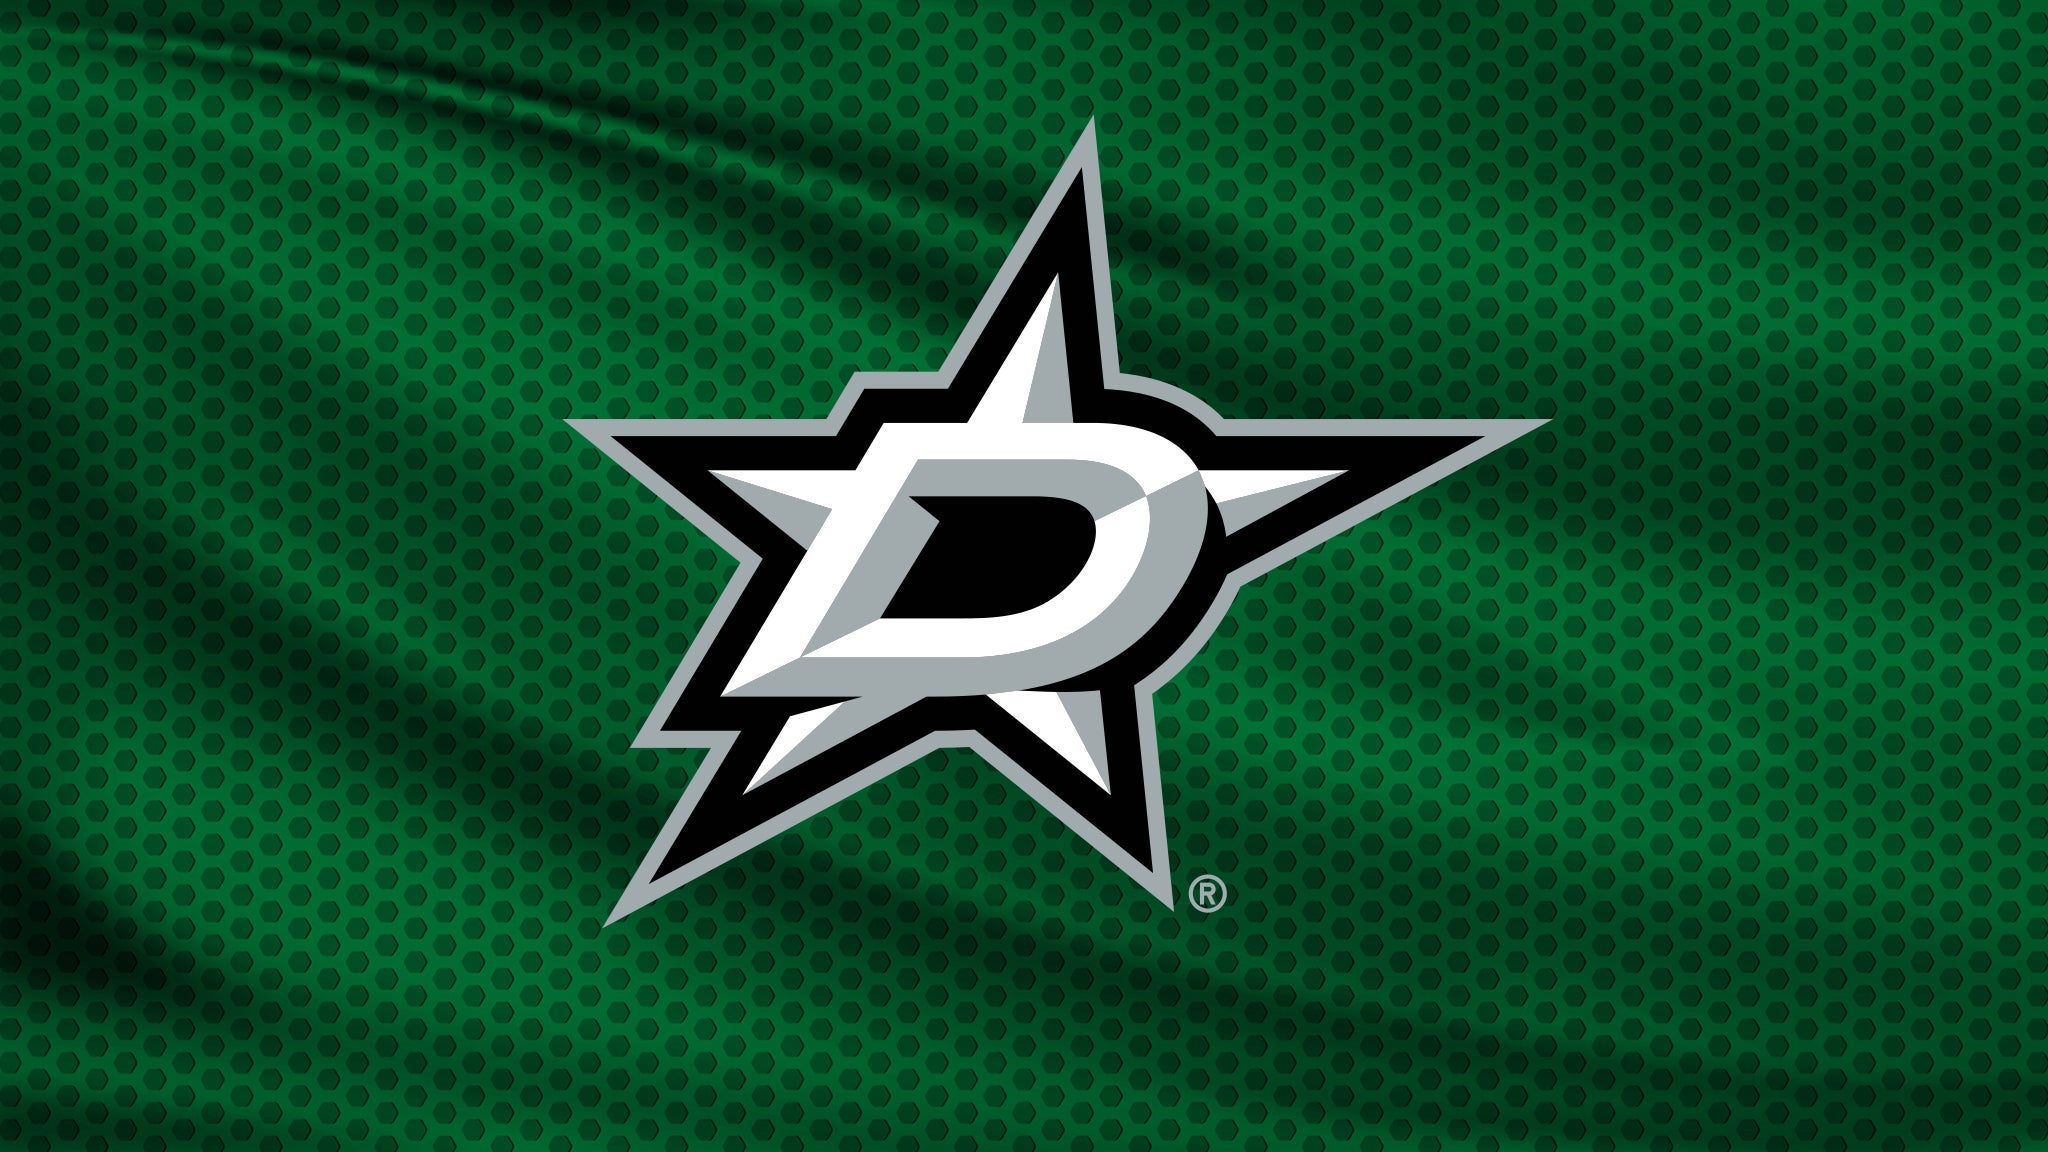 Dallas Stars vs. Anaheim Ducks presale password for show tickets in Dallas, TX (American Airlines Center)